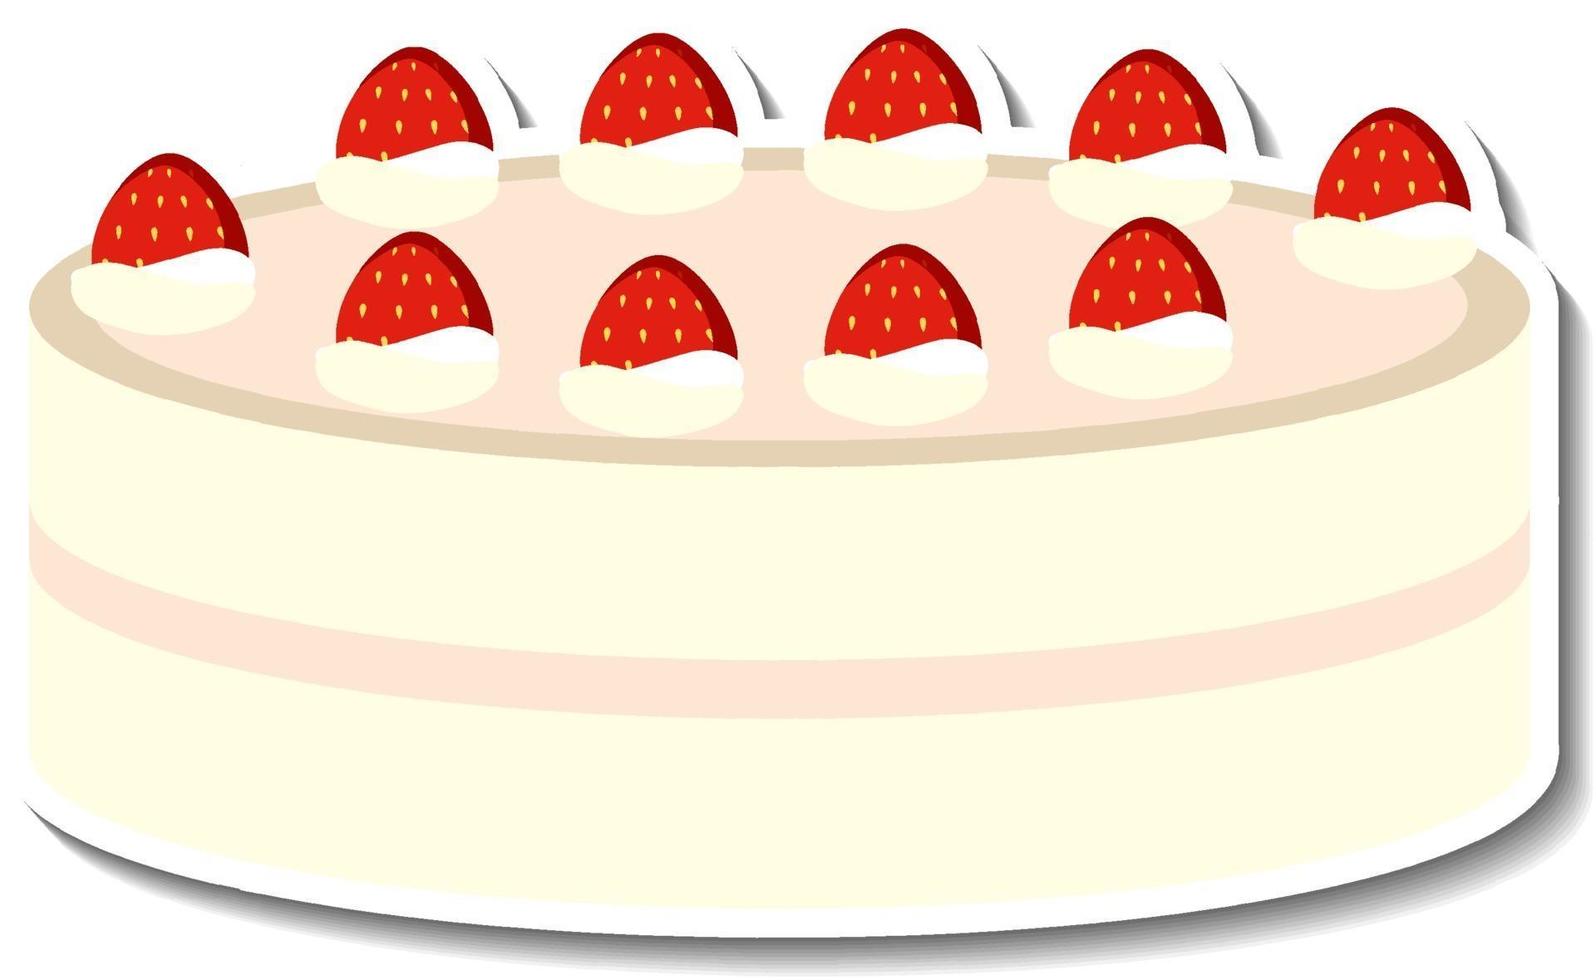 vanillecake met aardbeisticker die op witte achtergrond wordt geïsoleerd vector